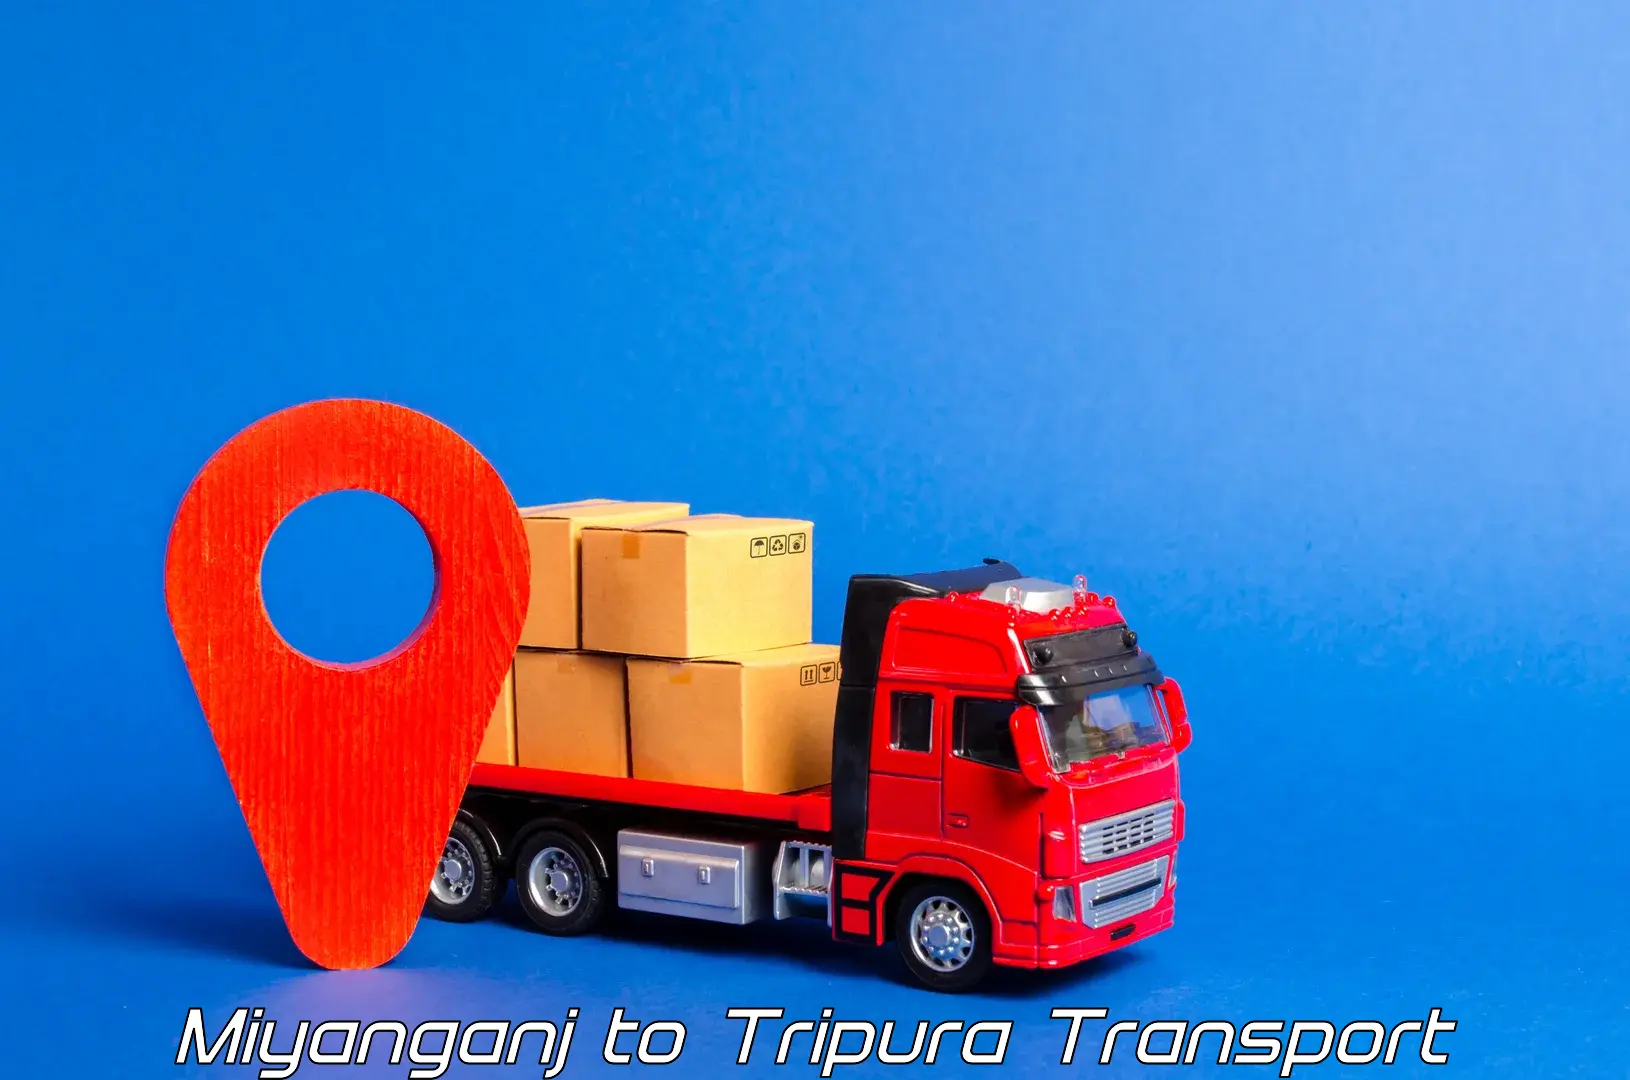 Daily parcel service transport Miyanganj to Manughat